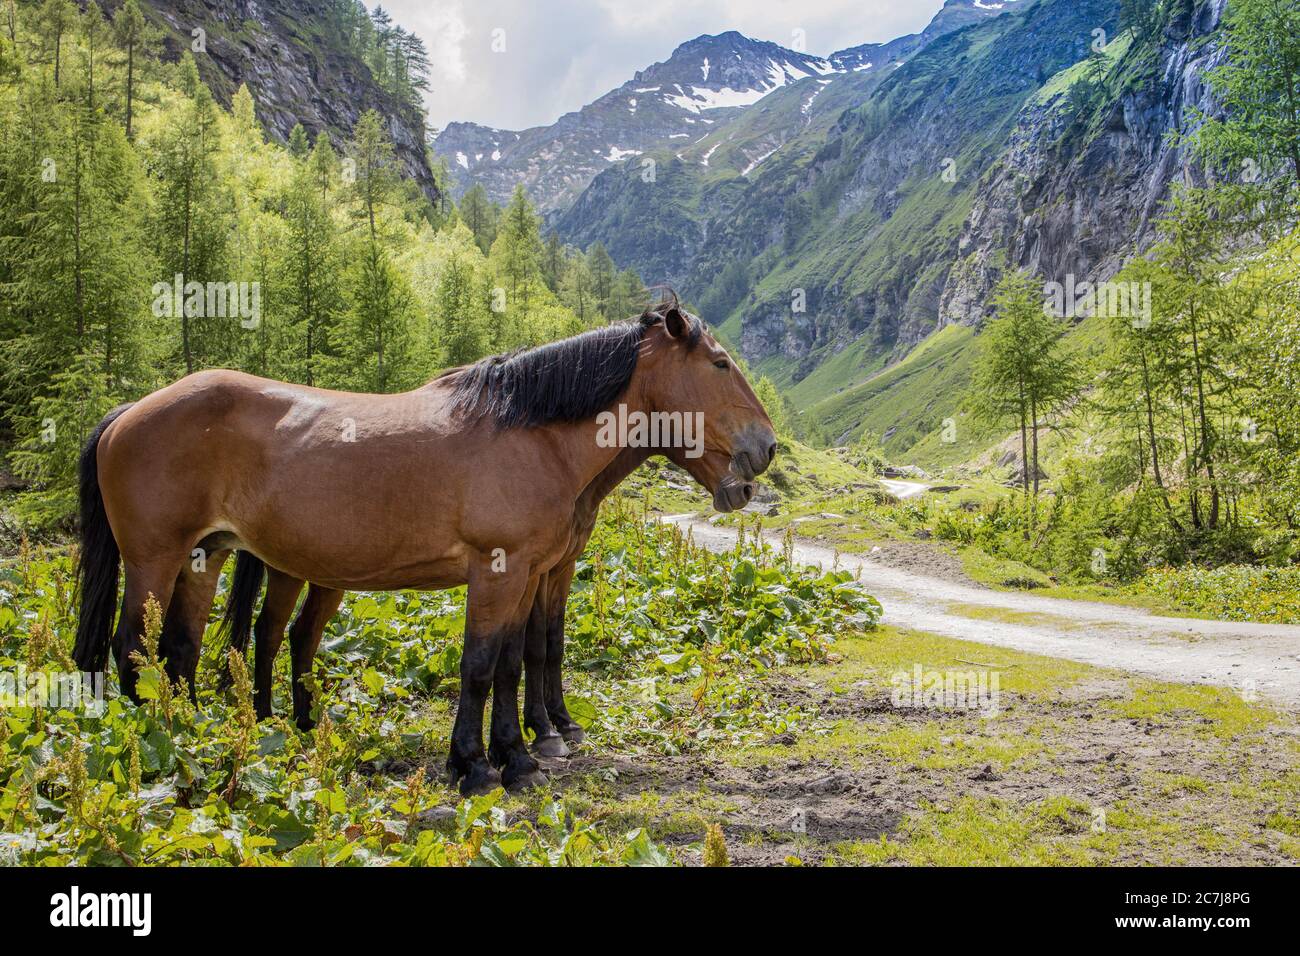 Hauspferd (Equus przewalskii f. caballus), Warmbluten stehen zusammen auf einer Alm im Hochgebirge, Seitenansicht, Österreich, Kärnten, Nationalpark hohe Tauern Stockfoto